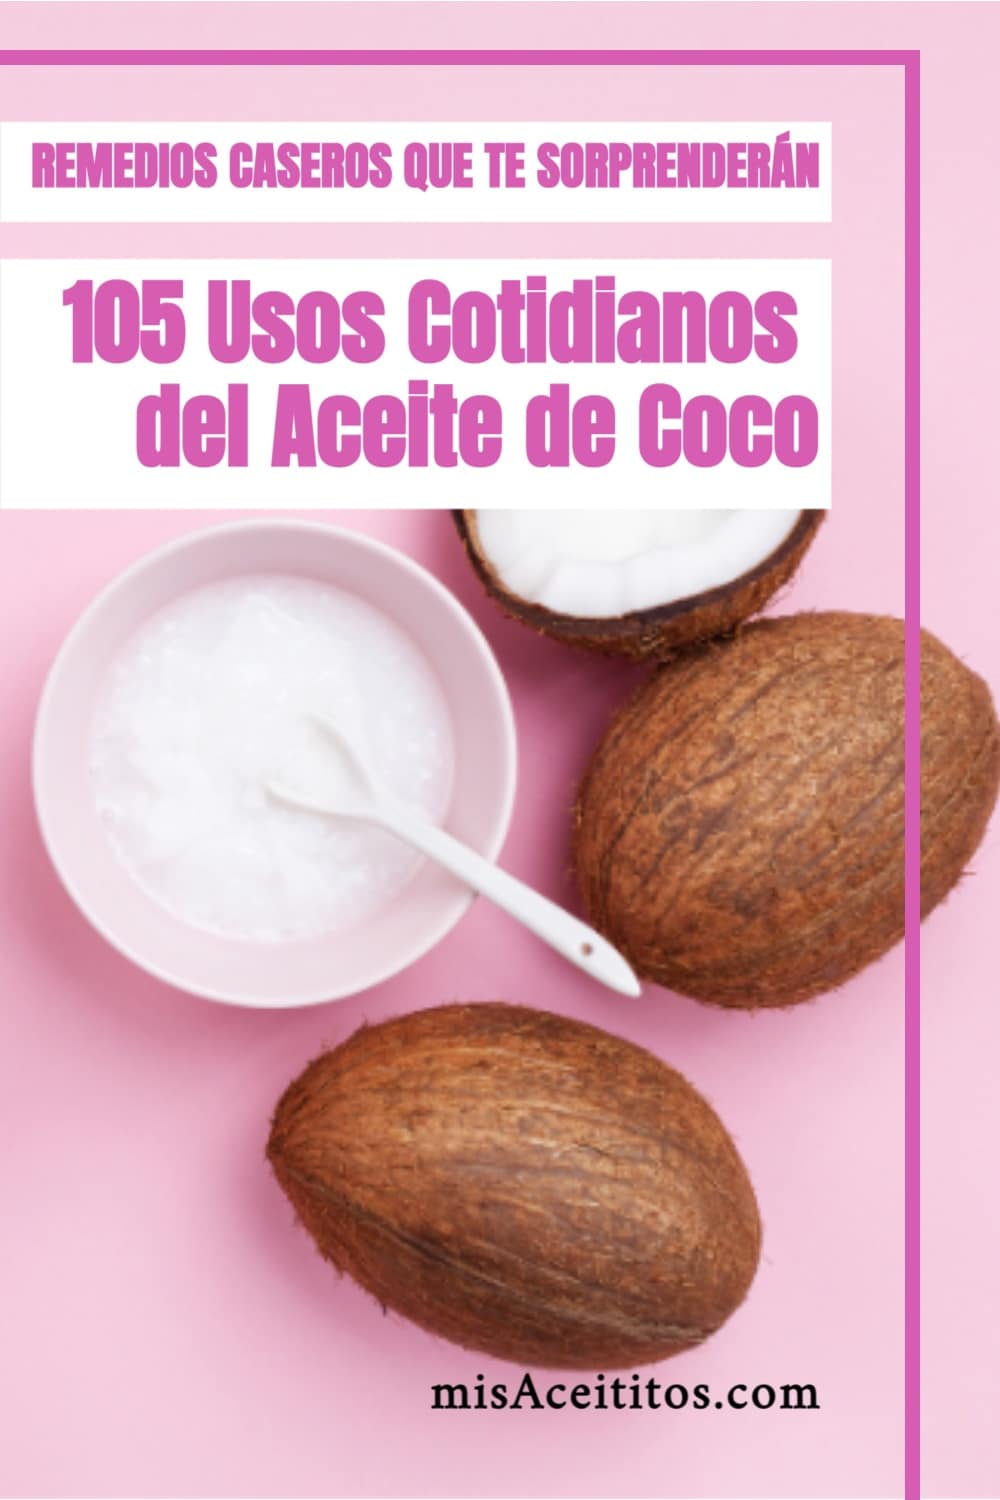 105 Usos del aceite de coco que te sorprenderán.